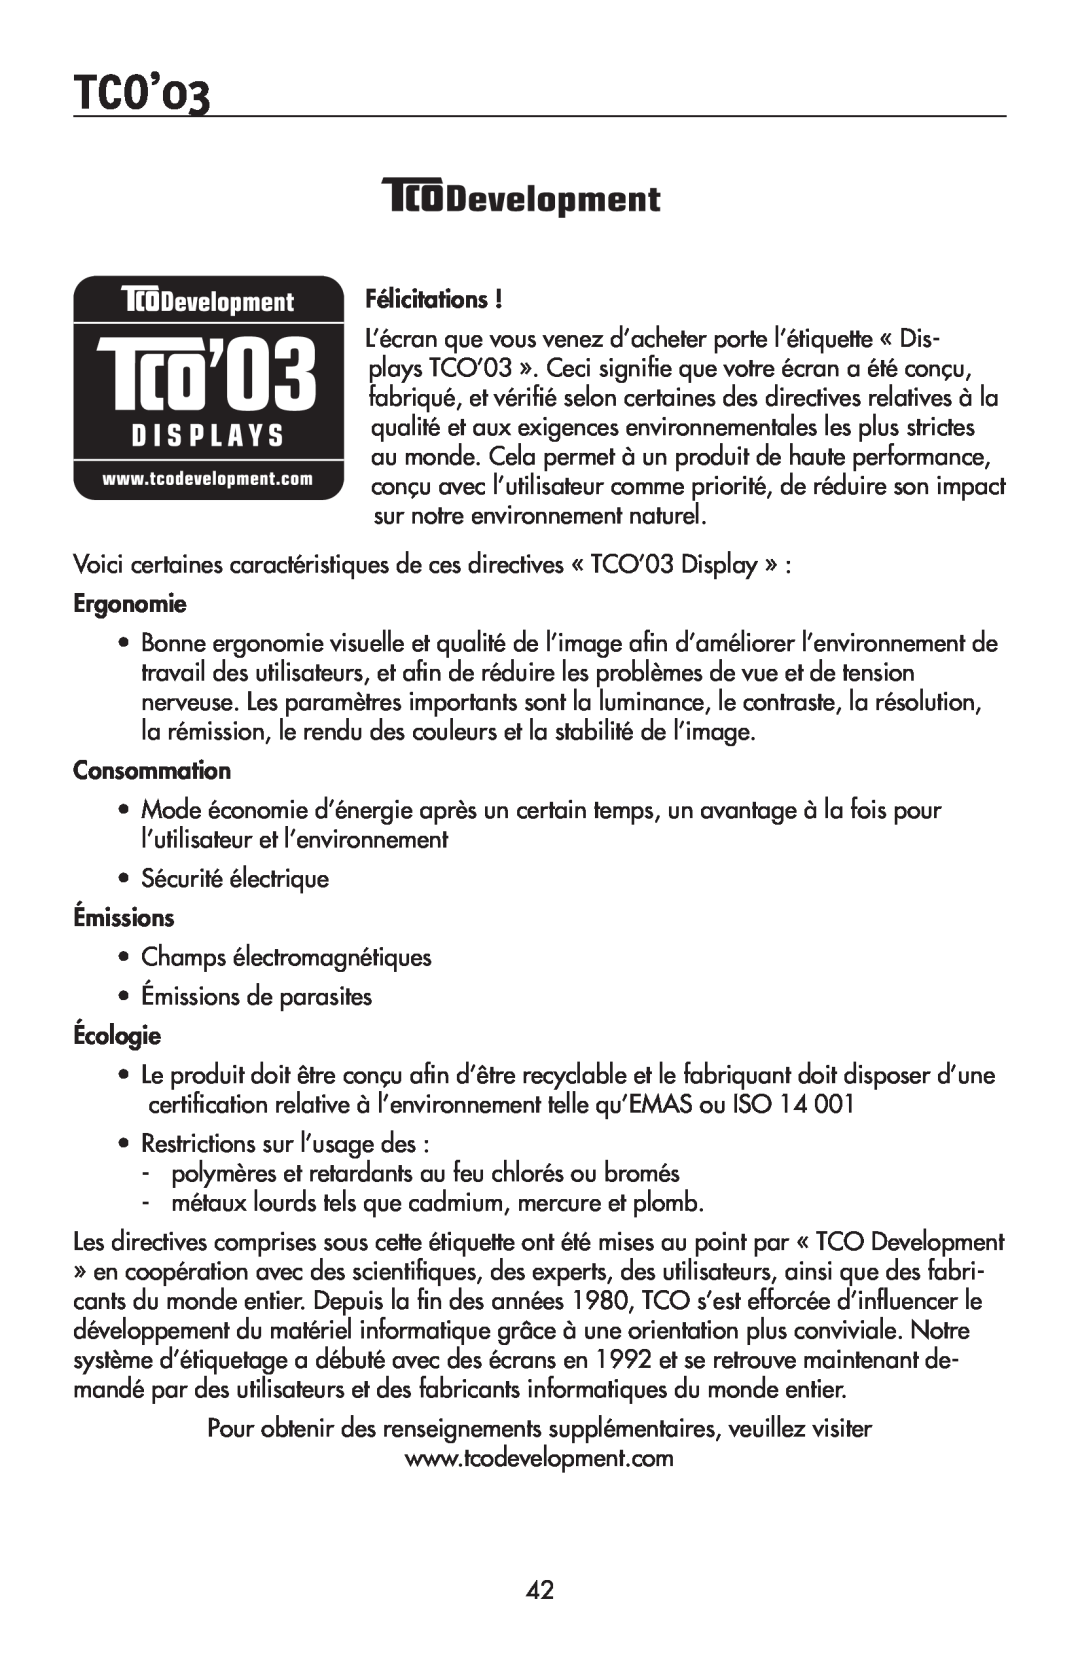 NEC 175VXM user manual TCO’03, Félicitations 